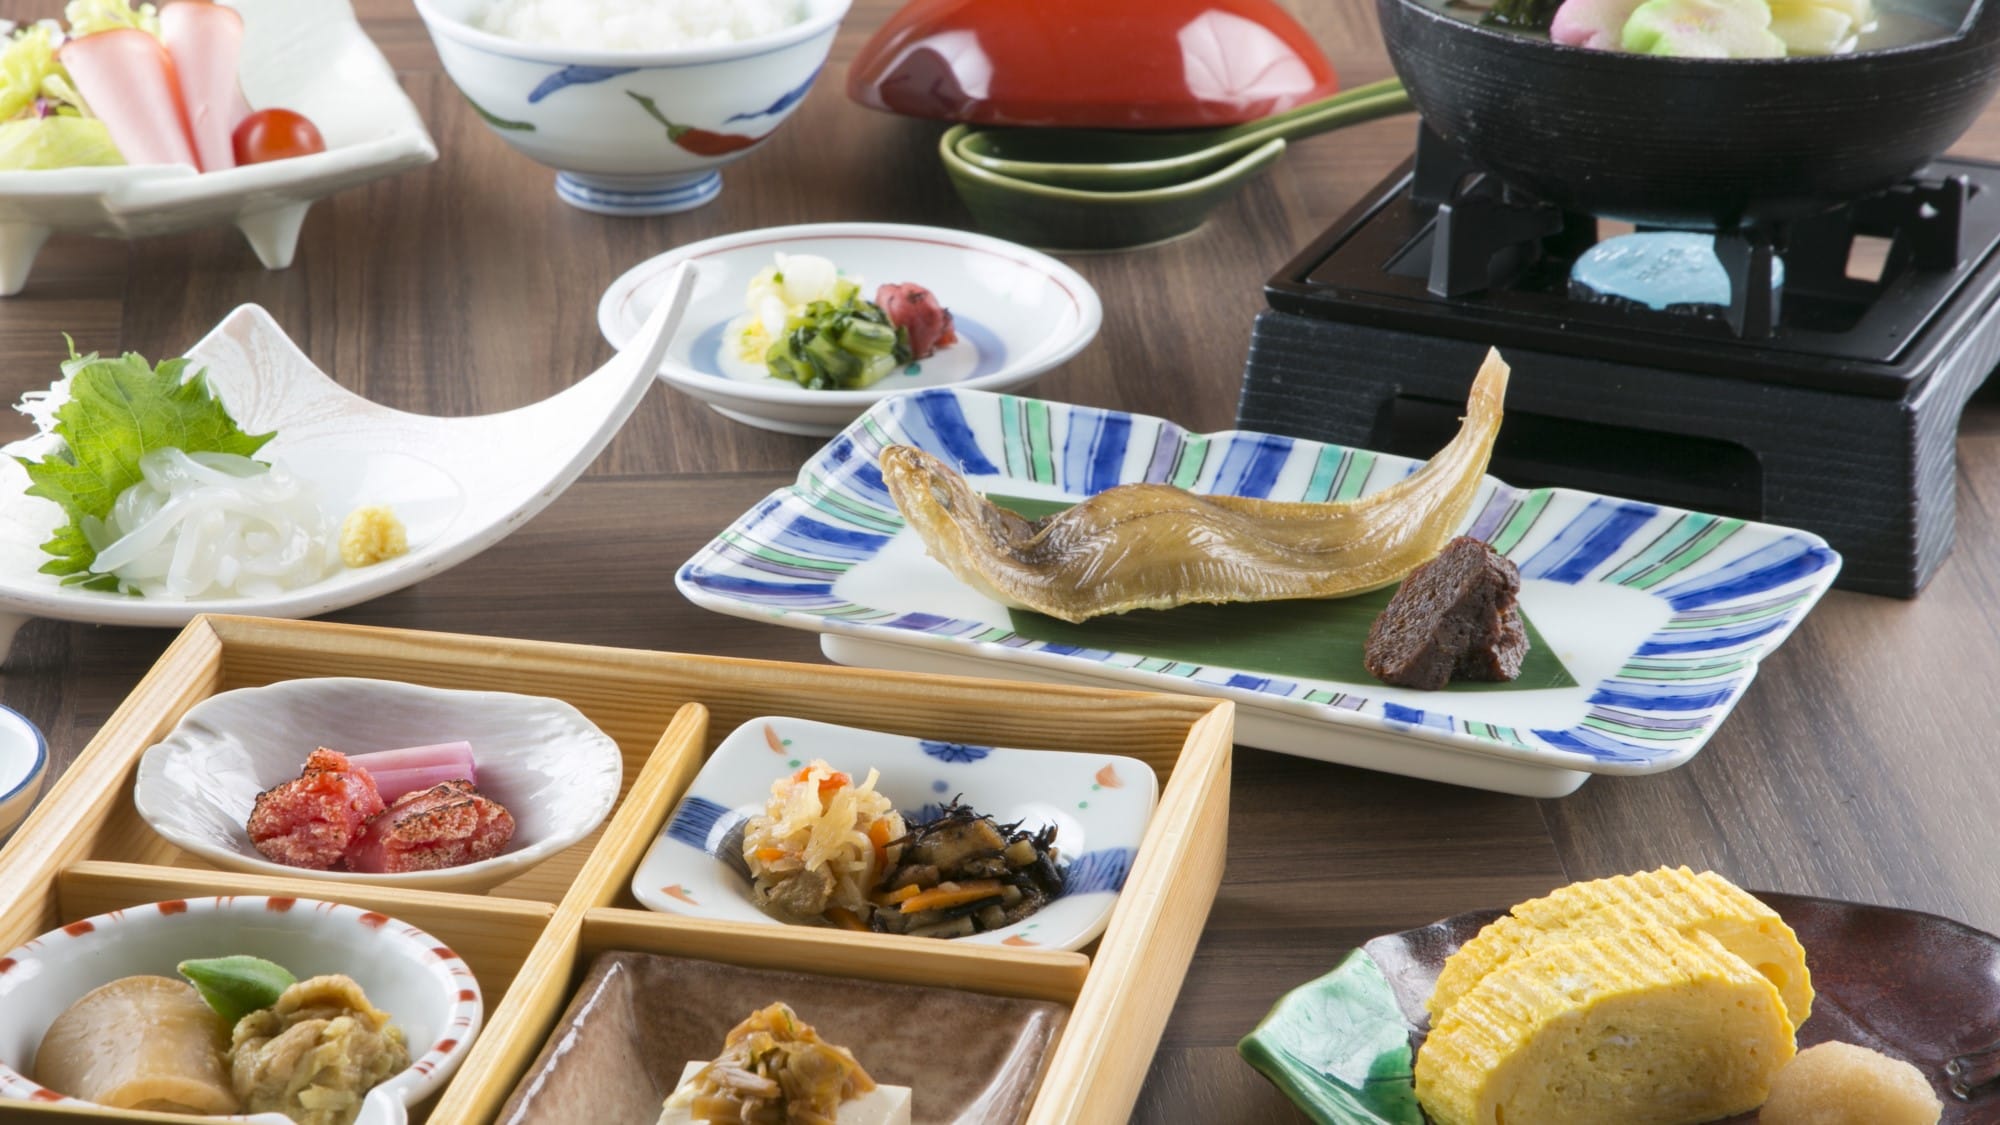 [Breakfast] Japanese cuisine (white rice is Koshihikari from Fukui Prefecture)